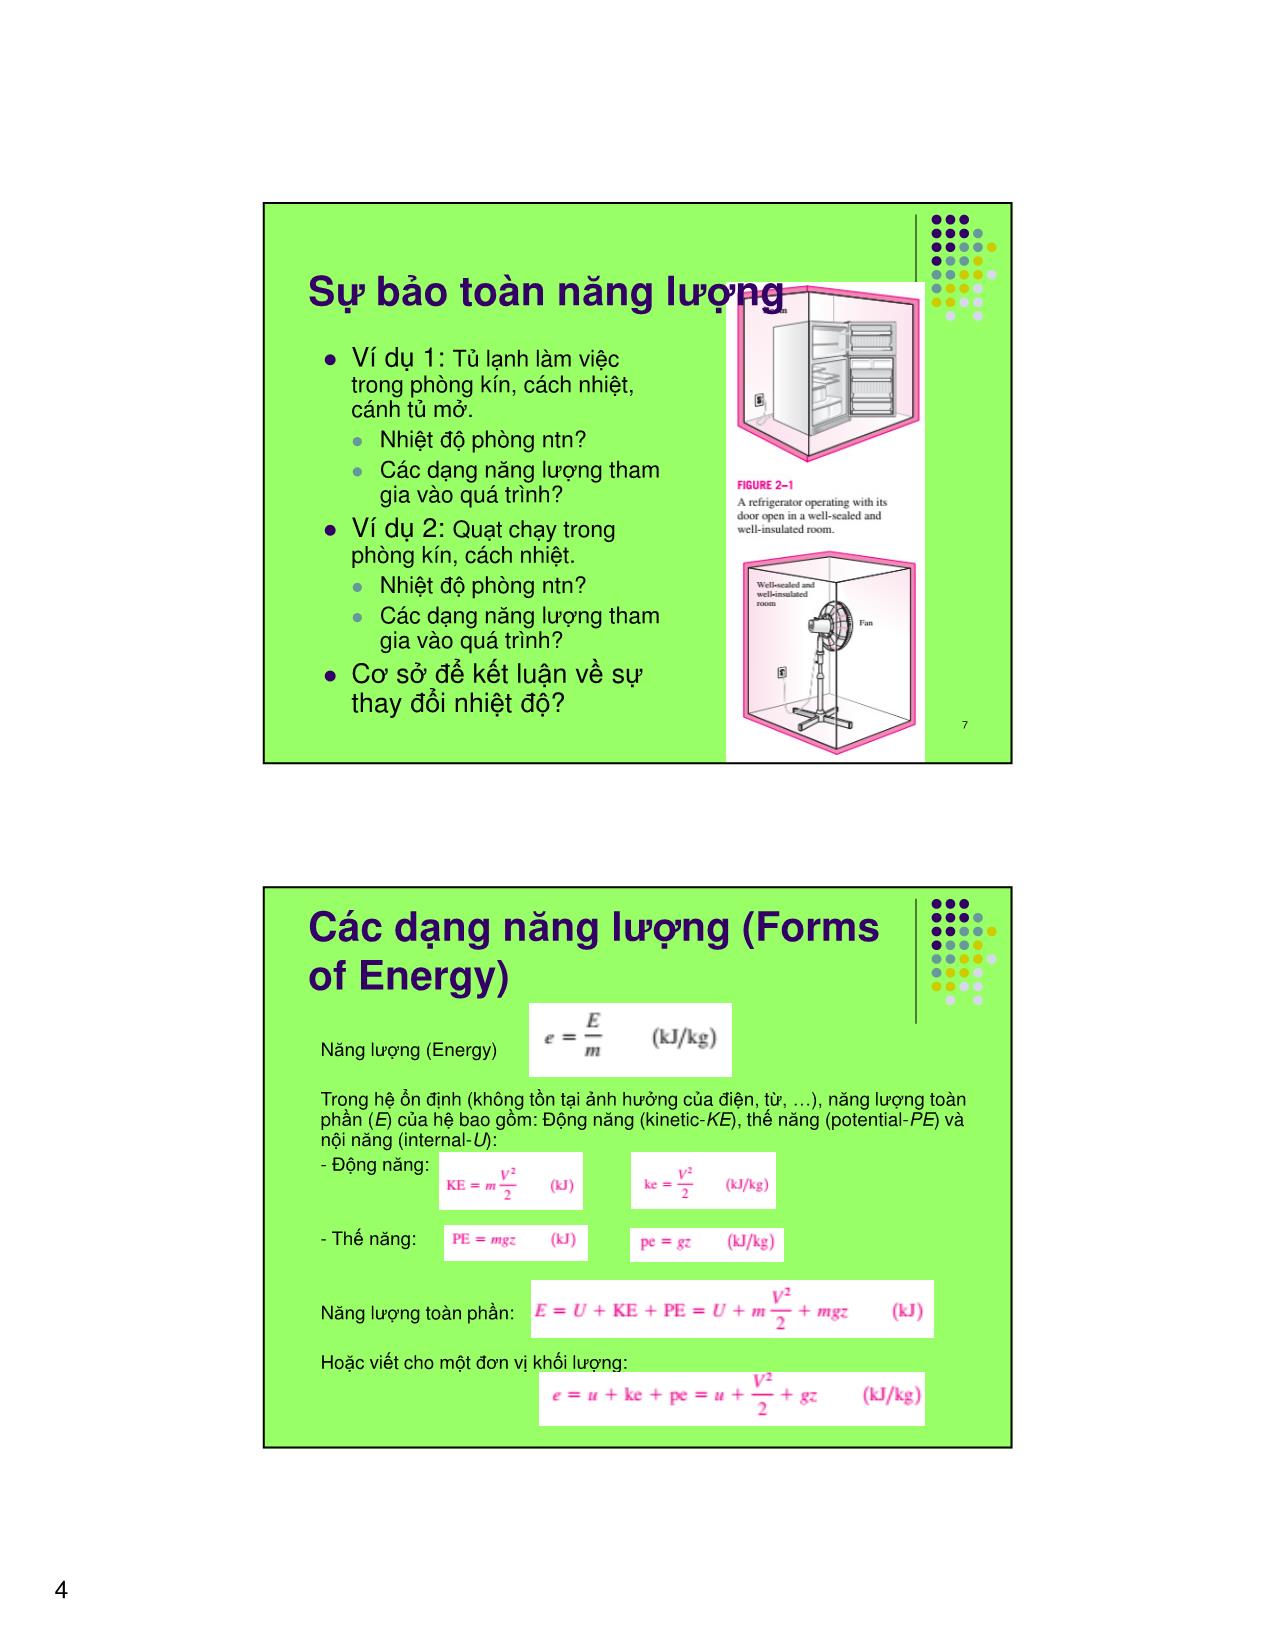 Bài giảng Kỹ thuật nhiệt - Chương 2: Năng lượng - Phần A: Bảo toàn năng lượng (Định luật nhiệt động học 1) trang 4